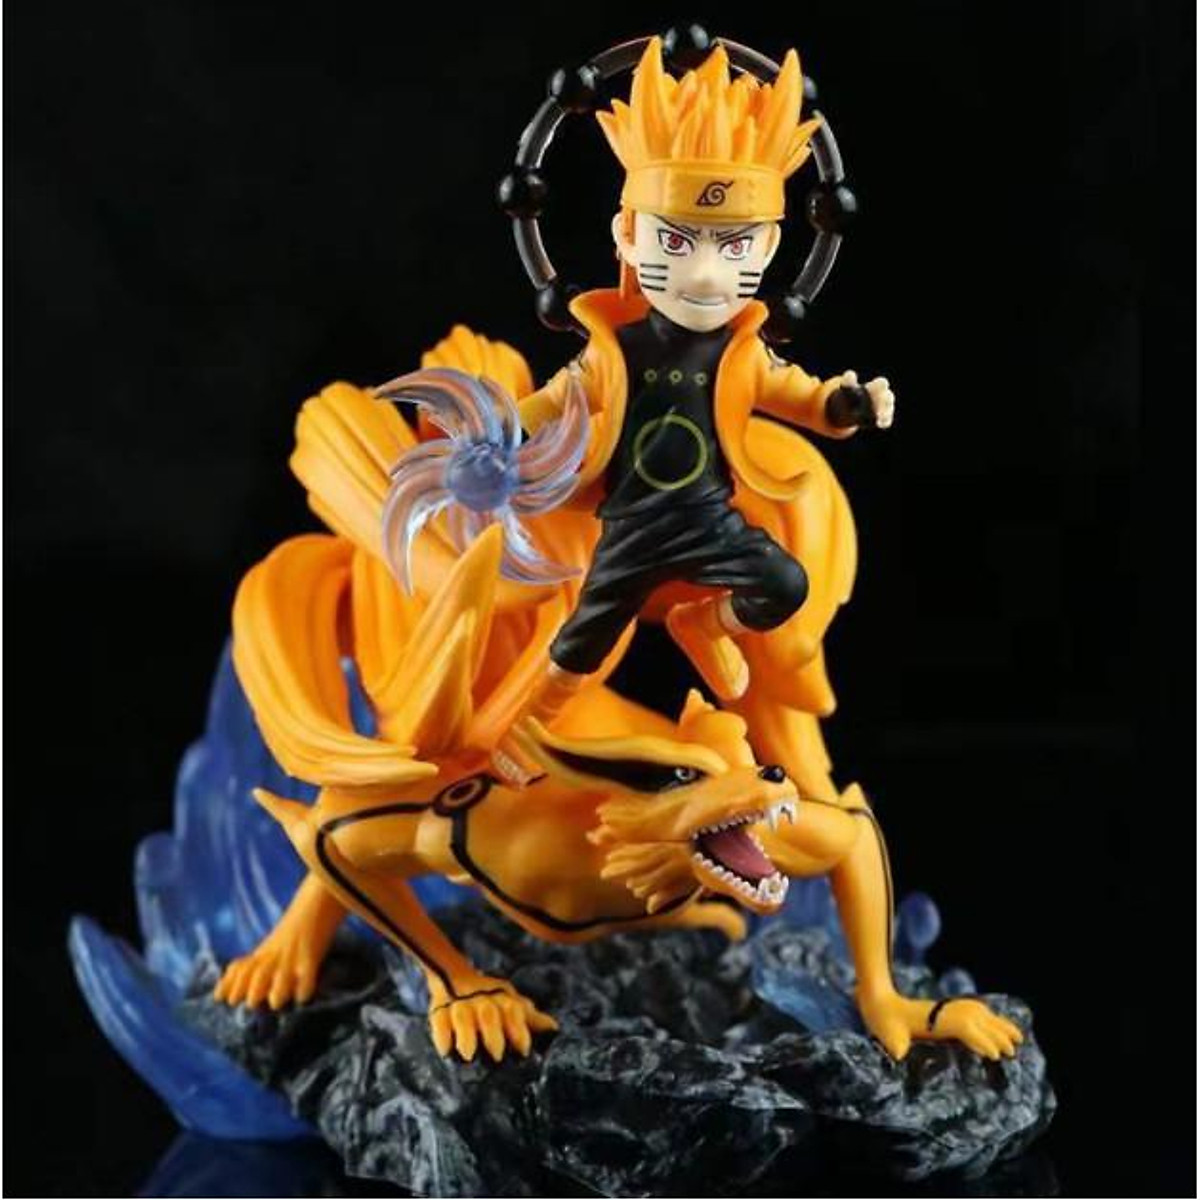 Bạn là một fan hâm mộ của Naruto và muốn tìm kiếm những mô hình độc đáo về chibi? Chúng tôi chắc chắn sẽ mang lại cho bạn cảm giác hài lòng và hạnh phúc khi bạn tìm thấy Mô Hình Figure Naruto chibi của chúng tôi. Hãy khám phá thế giới của Naruto với chúng tôi ngay hôm nay và đắm mình trong sự kỳ diệu của nghệ thuật.